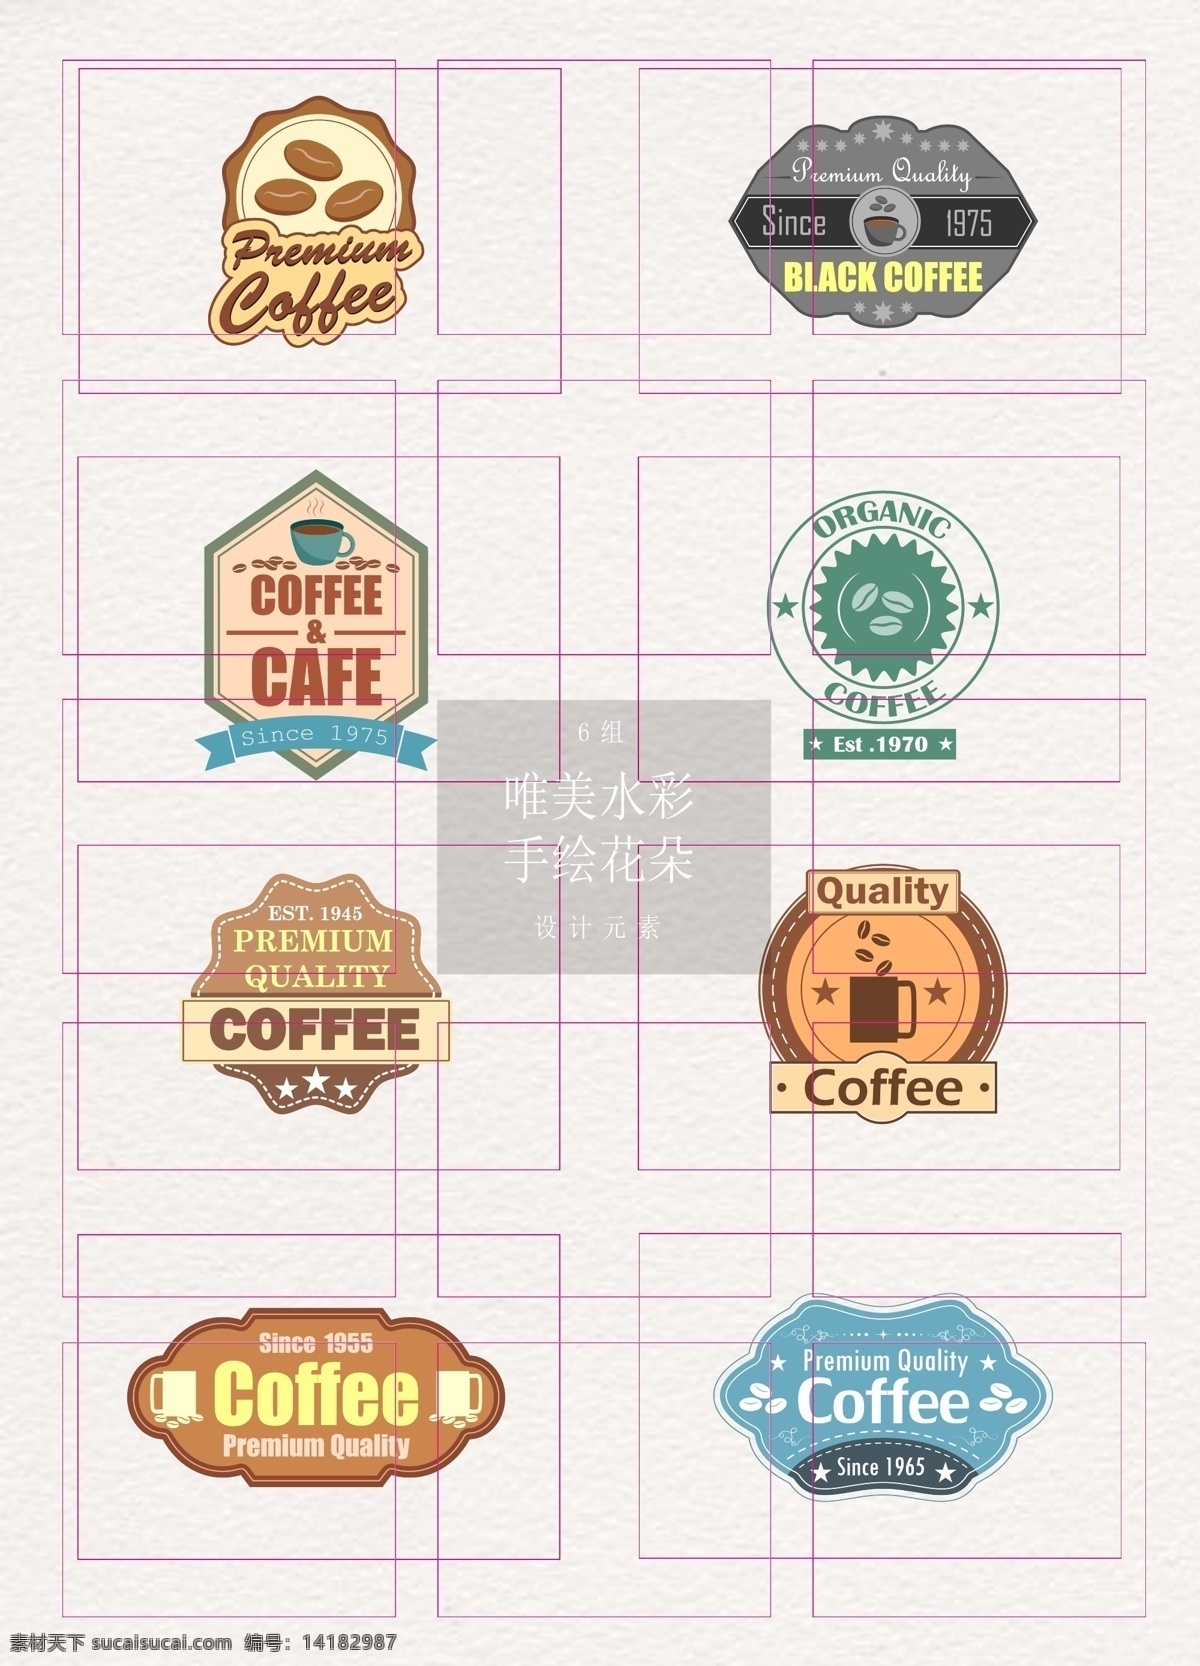 复古 风格 咖啡 标签 时尚 图标 美食 促销标签 复古风格 咖啡标签 食物 食品 美味 饮料 饮品 咖啡杯 丝带 横幅 条幅 咖啡豆 徽章设计